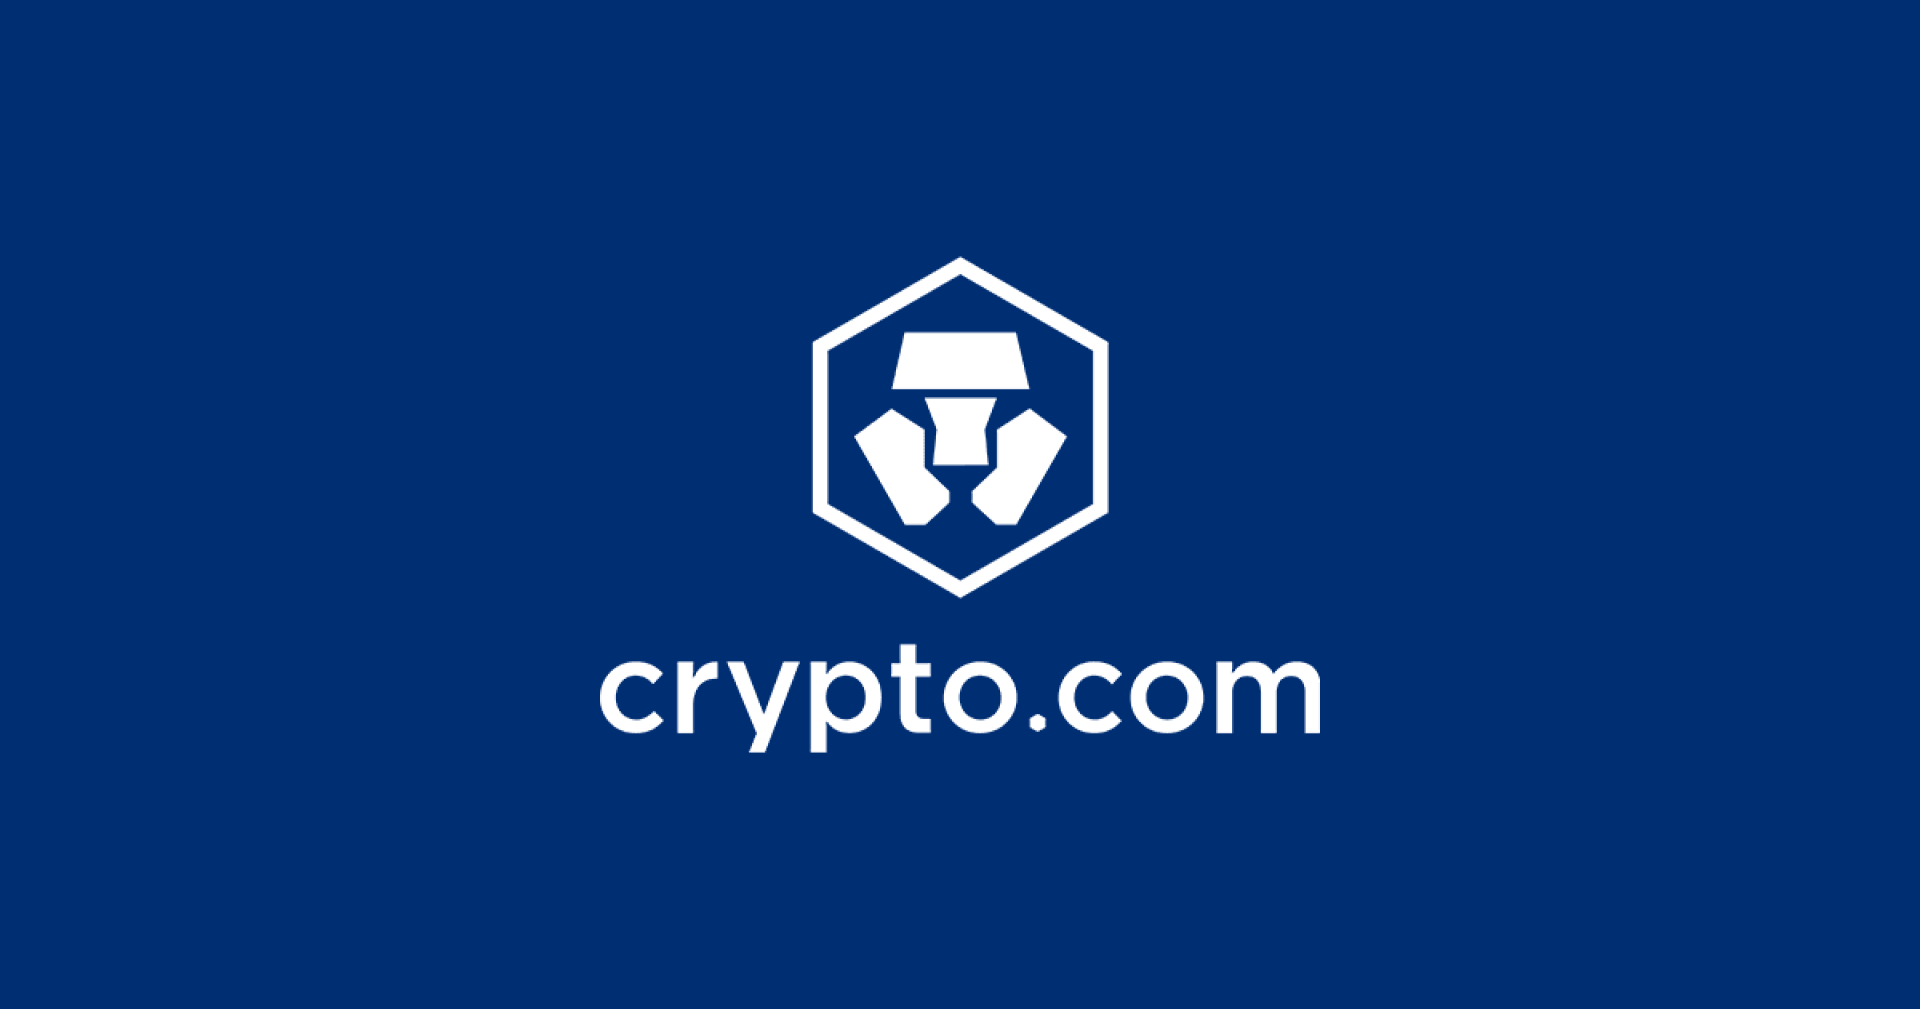 Crypto.com ประกาศปลดพนักงาน 20% เนื่องจากอุตสาหกรรมเสียหายหลังการล่มสลายของ FTX